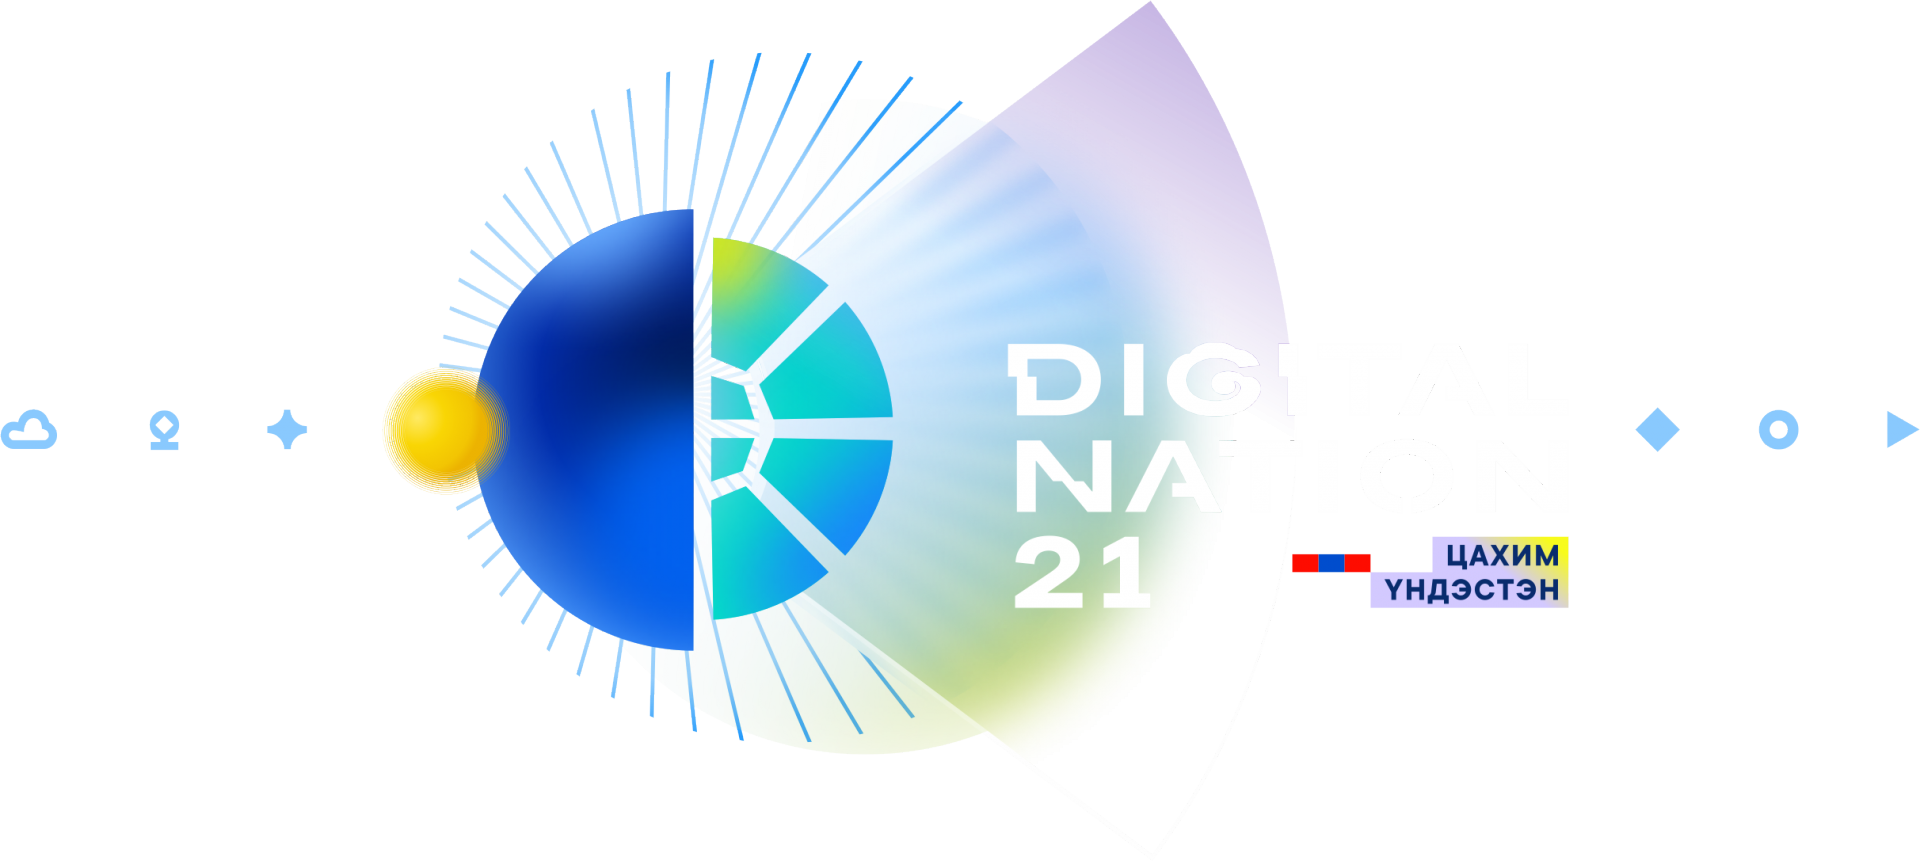 Цахим үндэстэн болох зорилтын хүрээнд “Digital Nation 2021” арга хэмжээнд хувийн хэвшлийнхэн манлайлан оролцож байна.